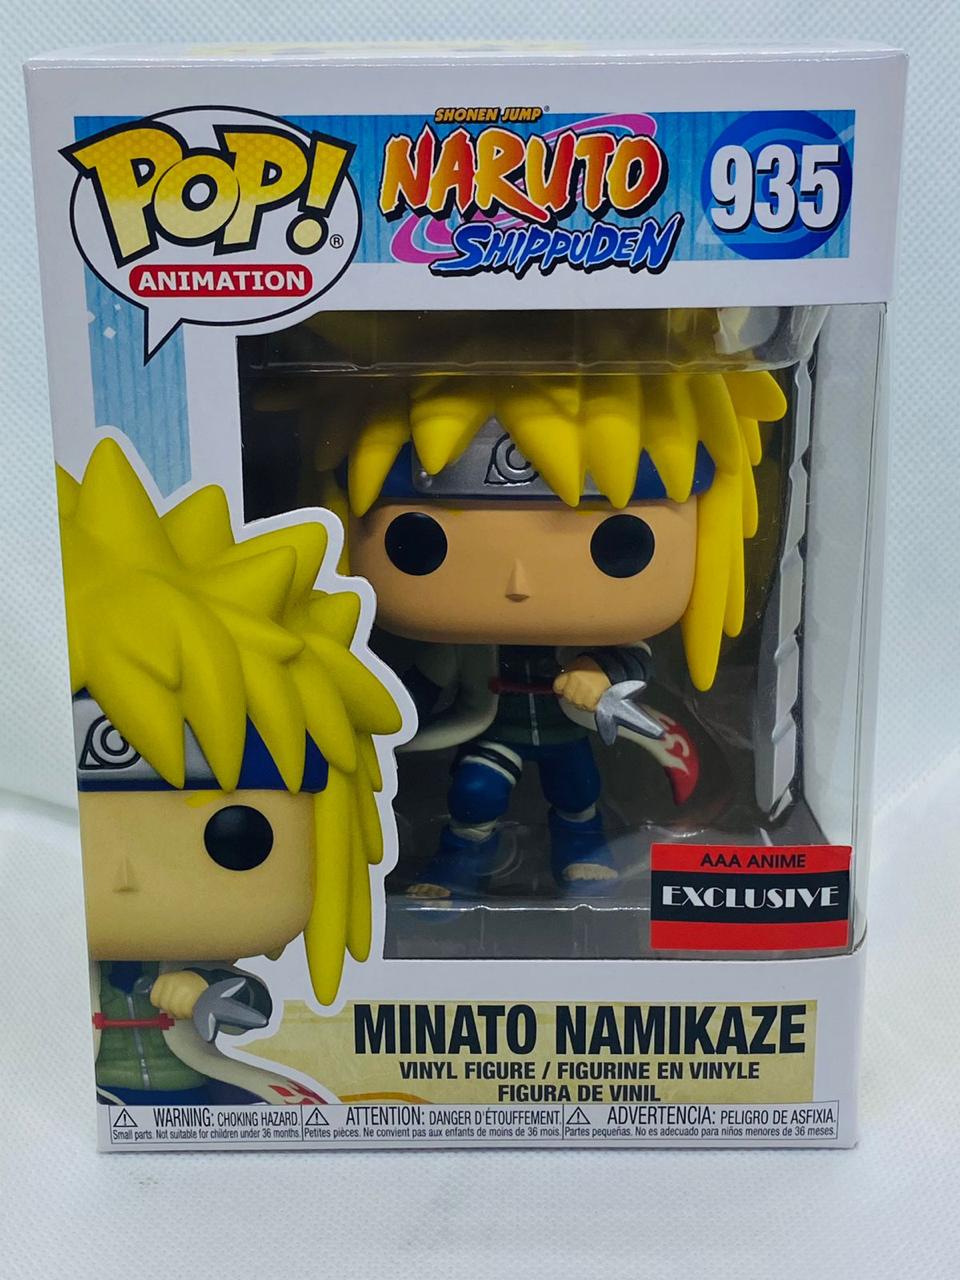 Minato Namikaze 935 Naruto Shippuden AAA An ime Exclusive Funko Pop